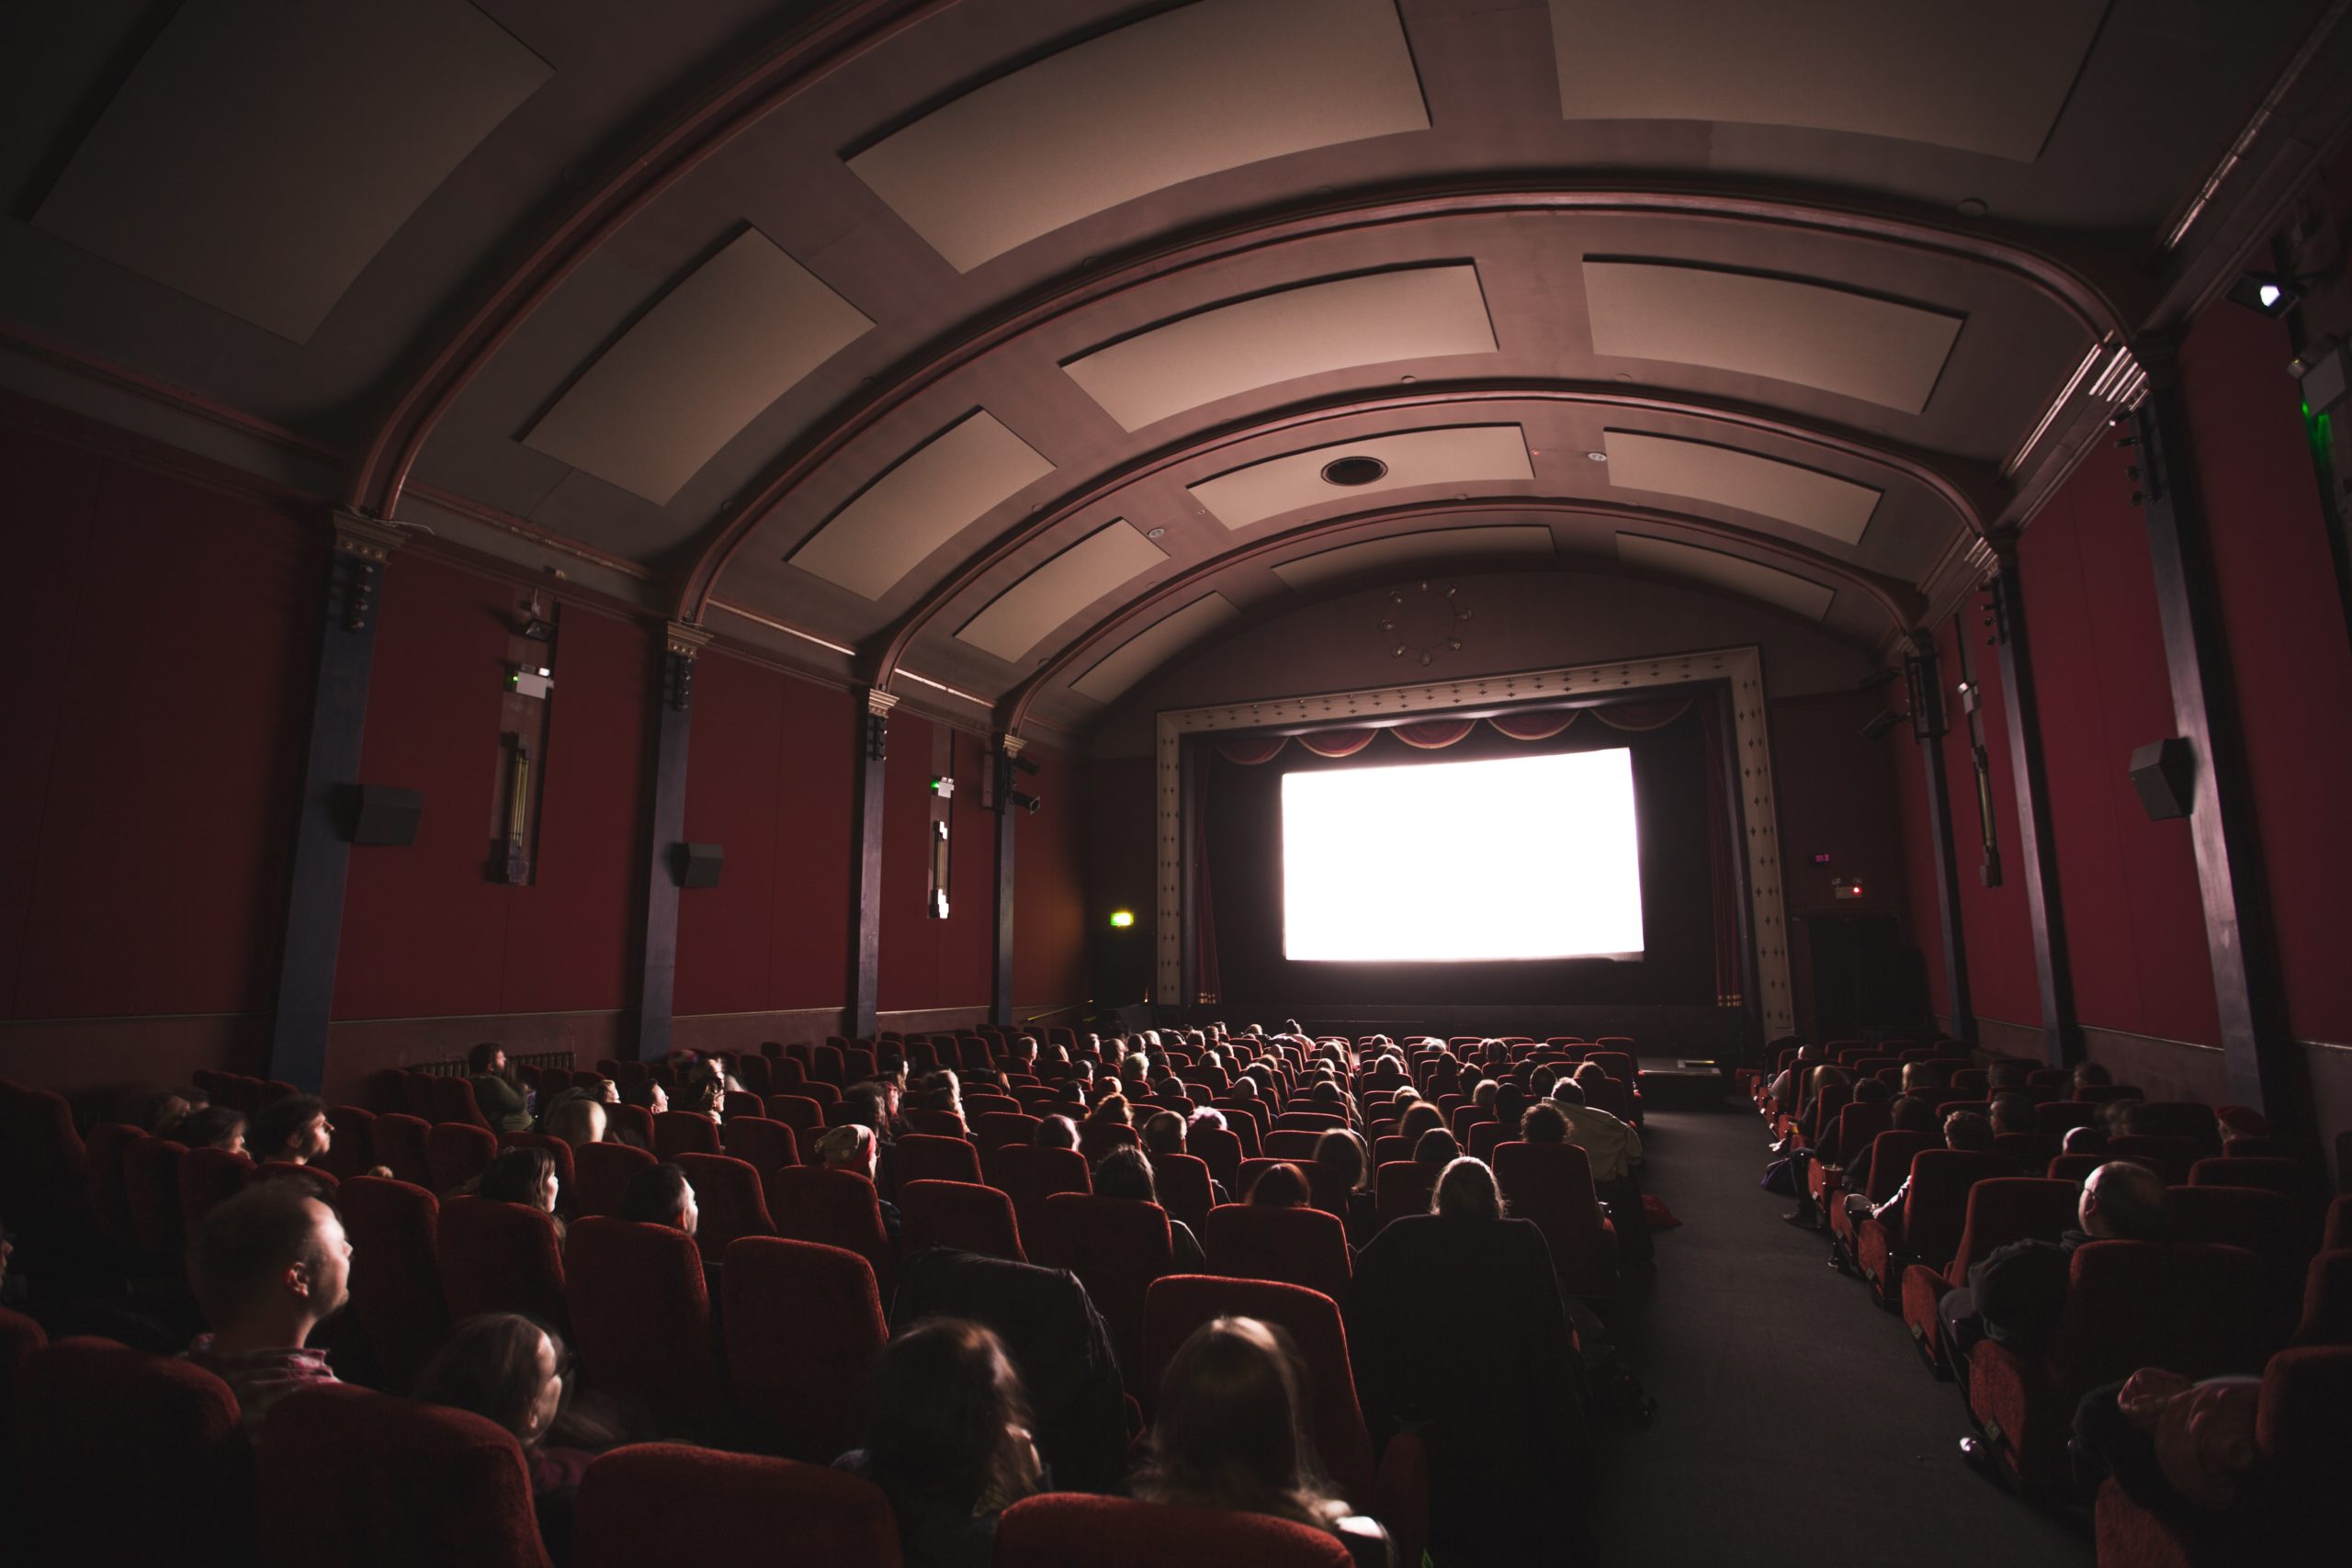 Une salle de cinéma plongée dans la pénombre avec des spectateurs installés sur des fauteuils rouge, observant le grand écran allumé devant eux 